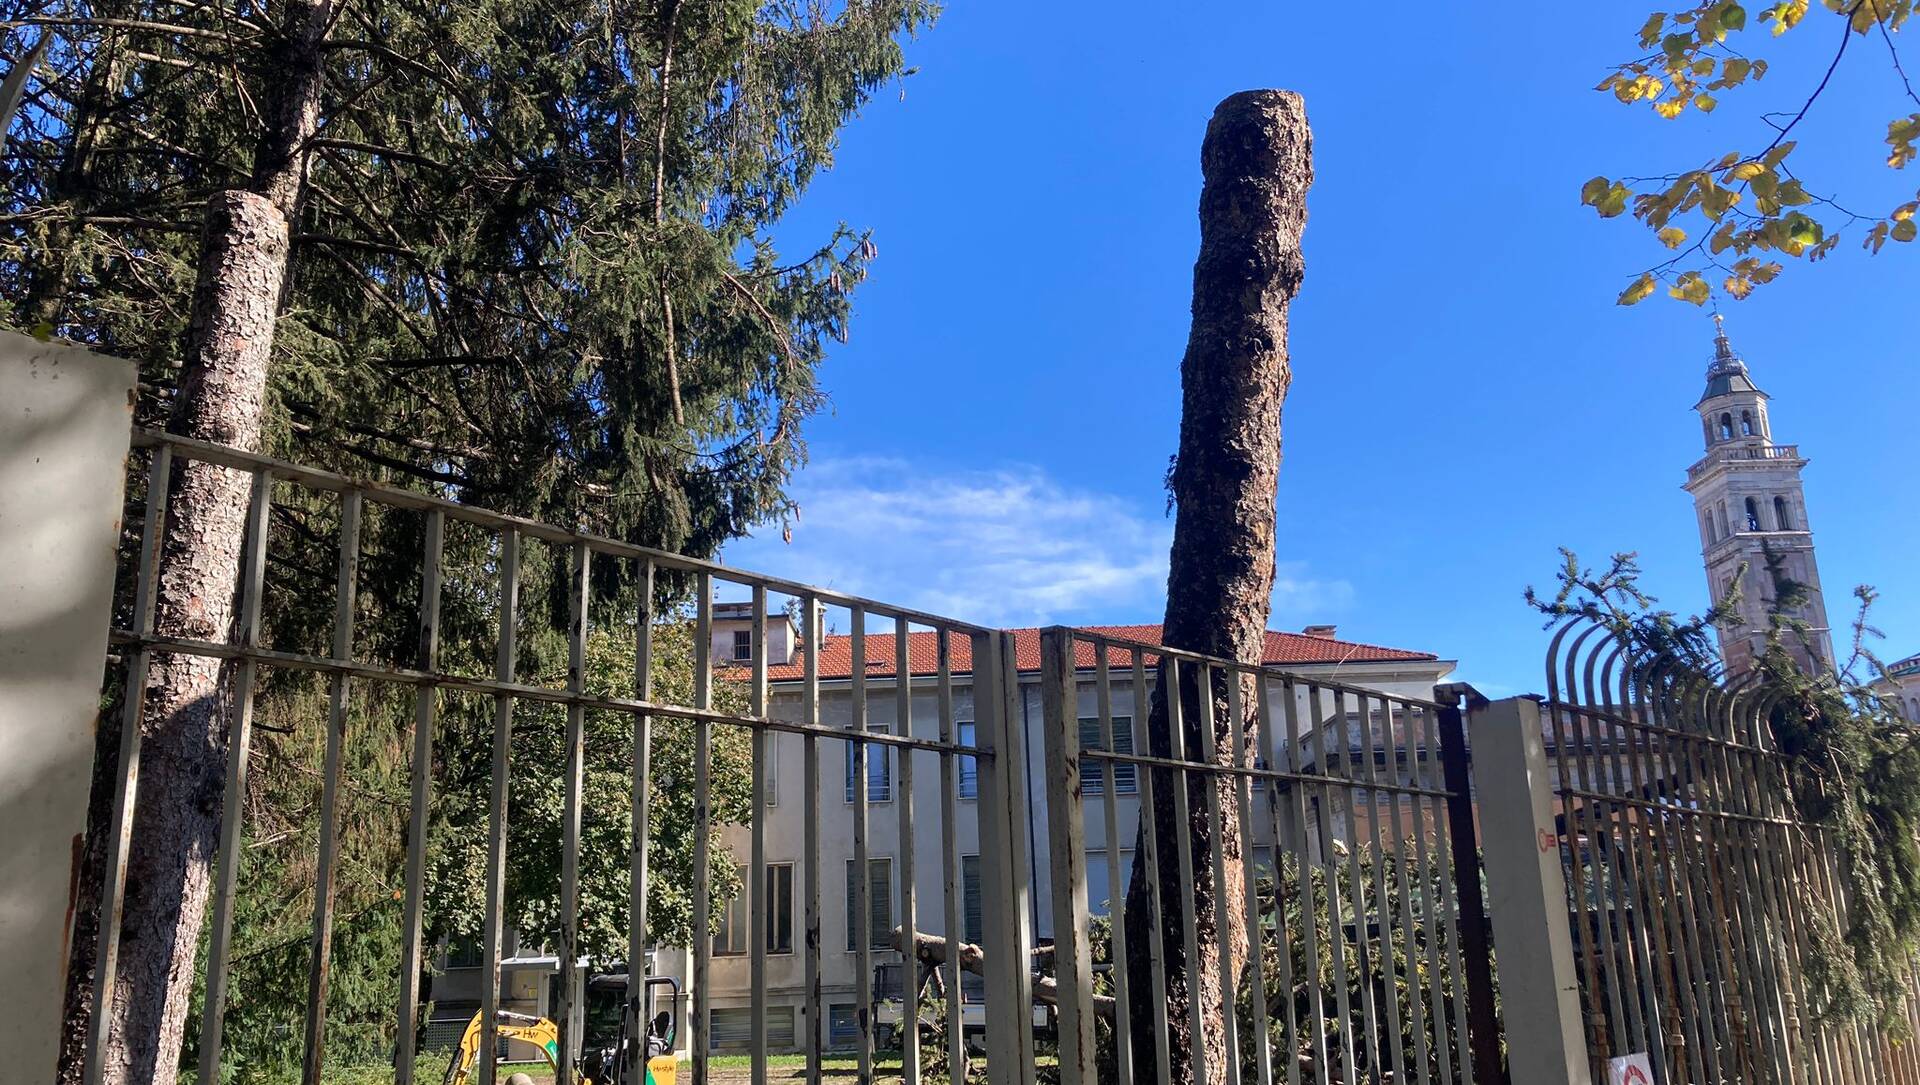 Saronno, lanciata una petizione per salvare gli alberi e l’identità del parco dell’ex Seminario